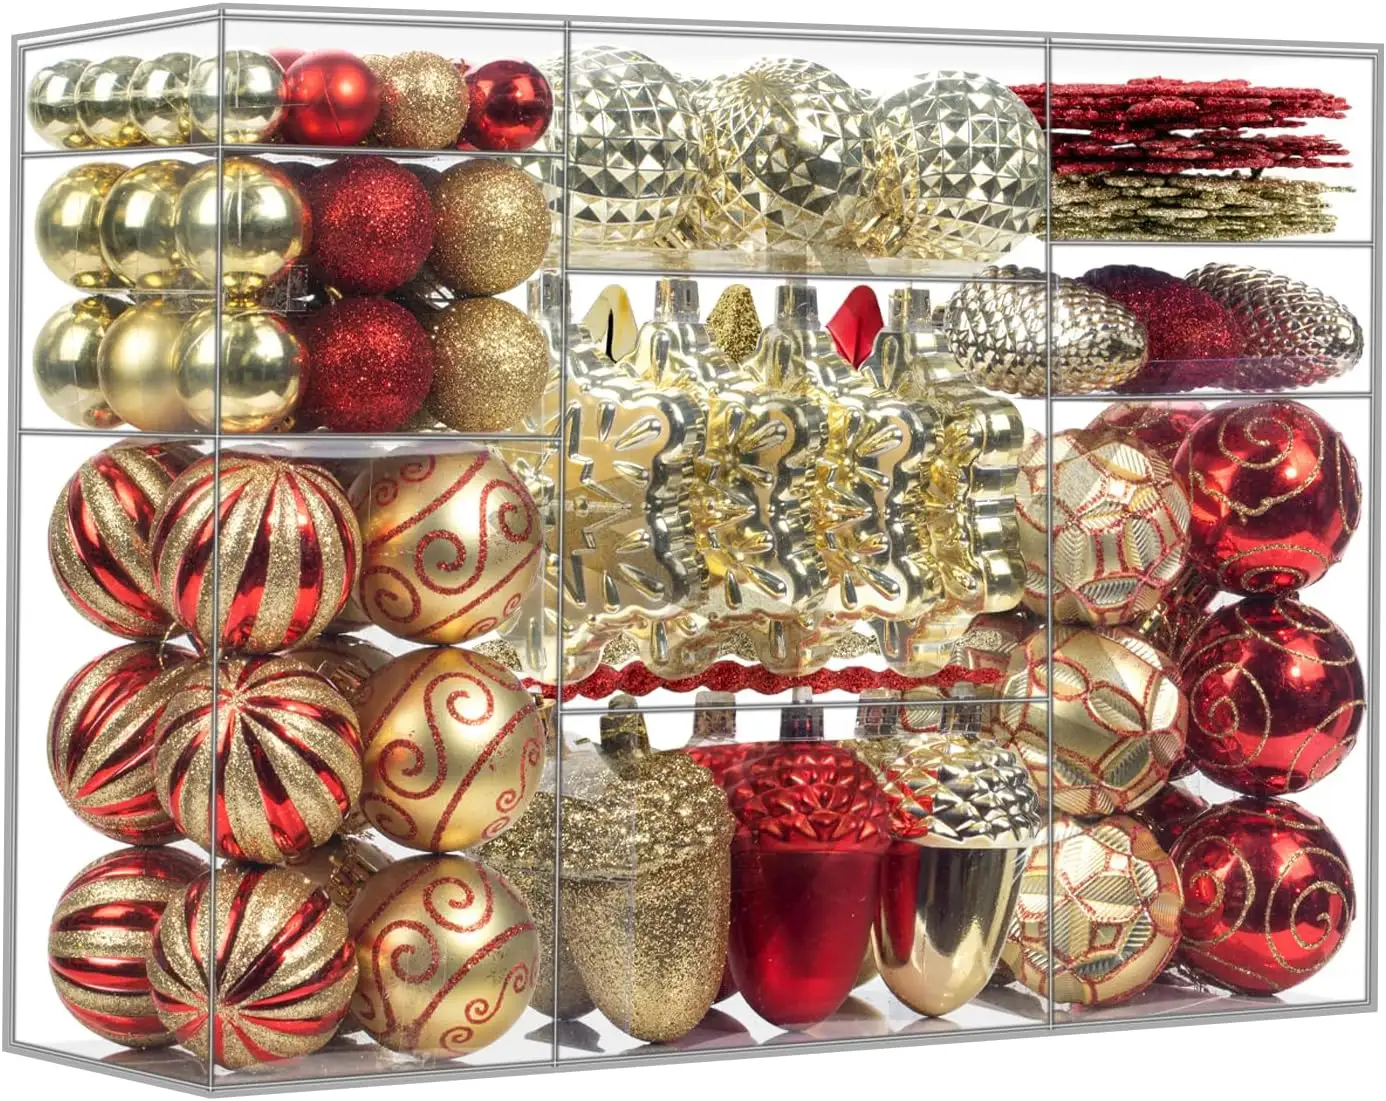 110 قطعة مجموعة الكرات الزخرفية لعيد الميلاد، شجرة الكريسماس كرات الزينة المعلقة مثالية لعطلات الزفاف ديكور الكريسماس